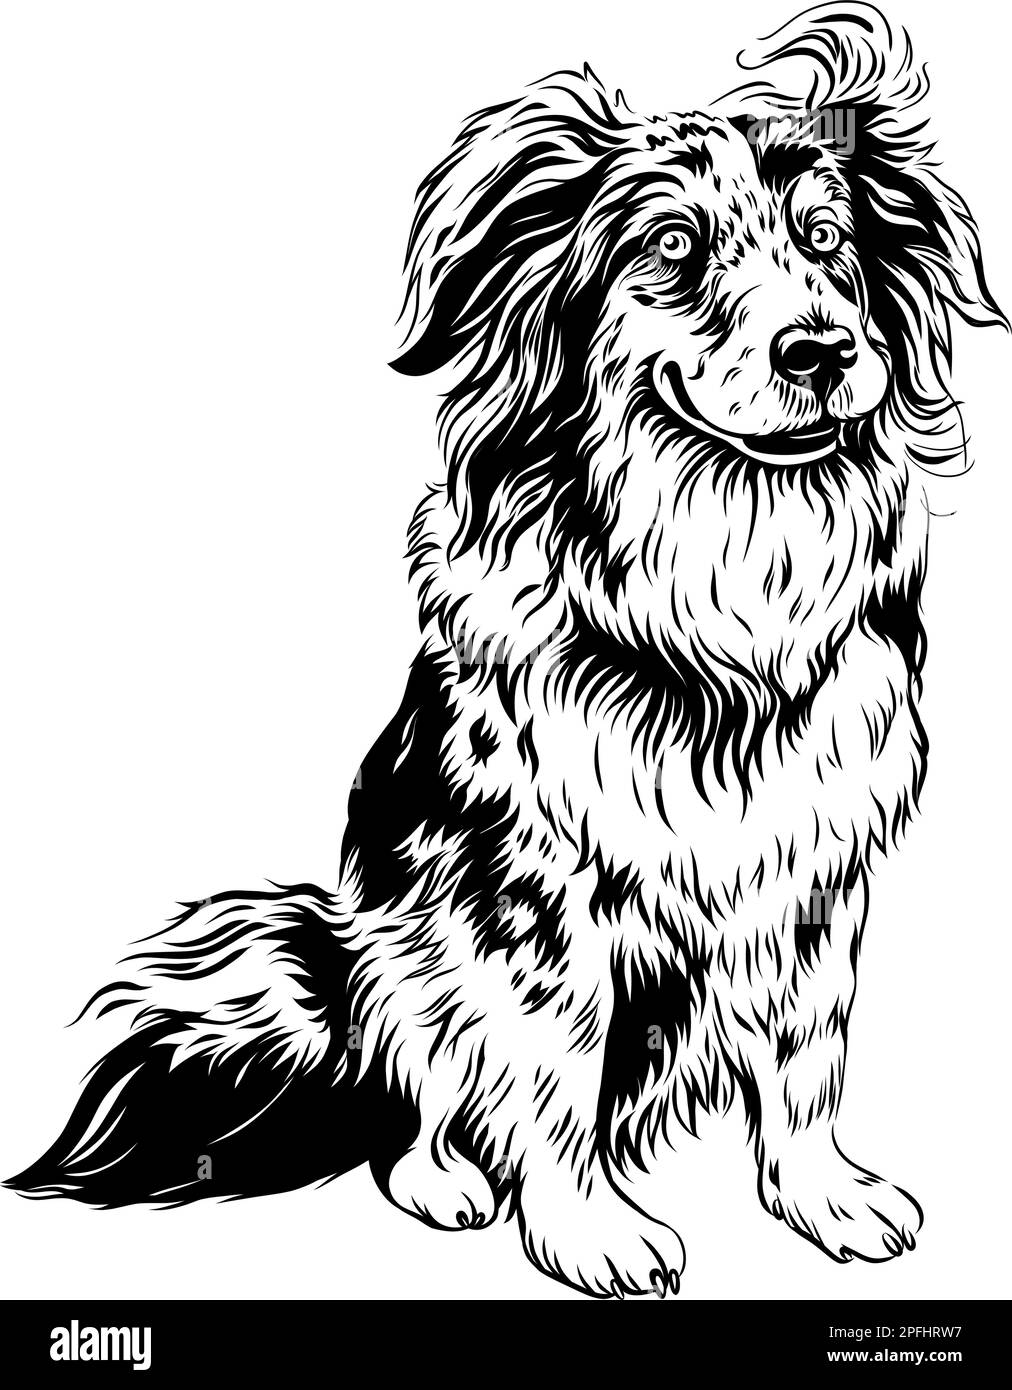 Croquis noir et blanc de chien Red Australian Shepherd Breed, Aussie ou Little Blue Dog Illustration de Vecteur